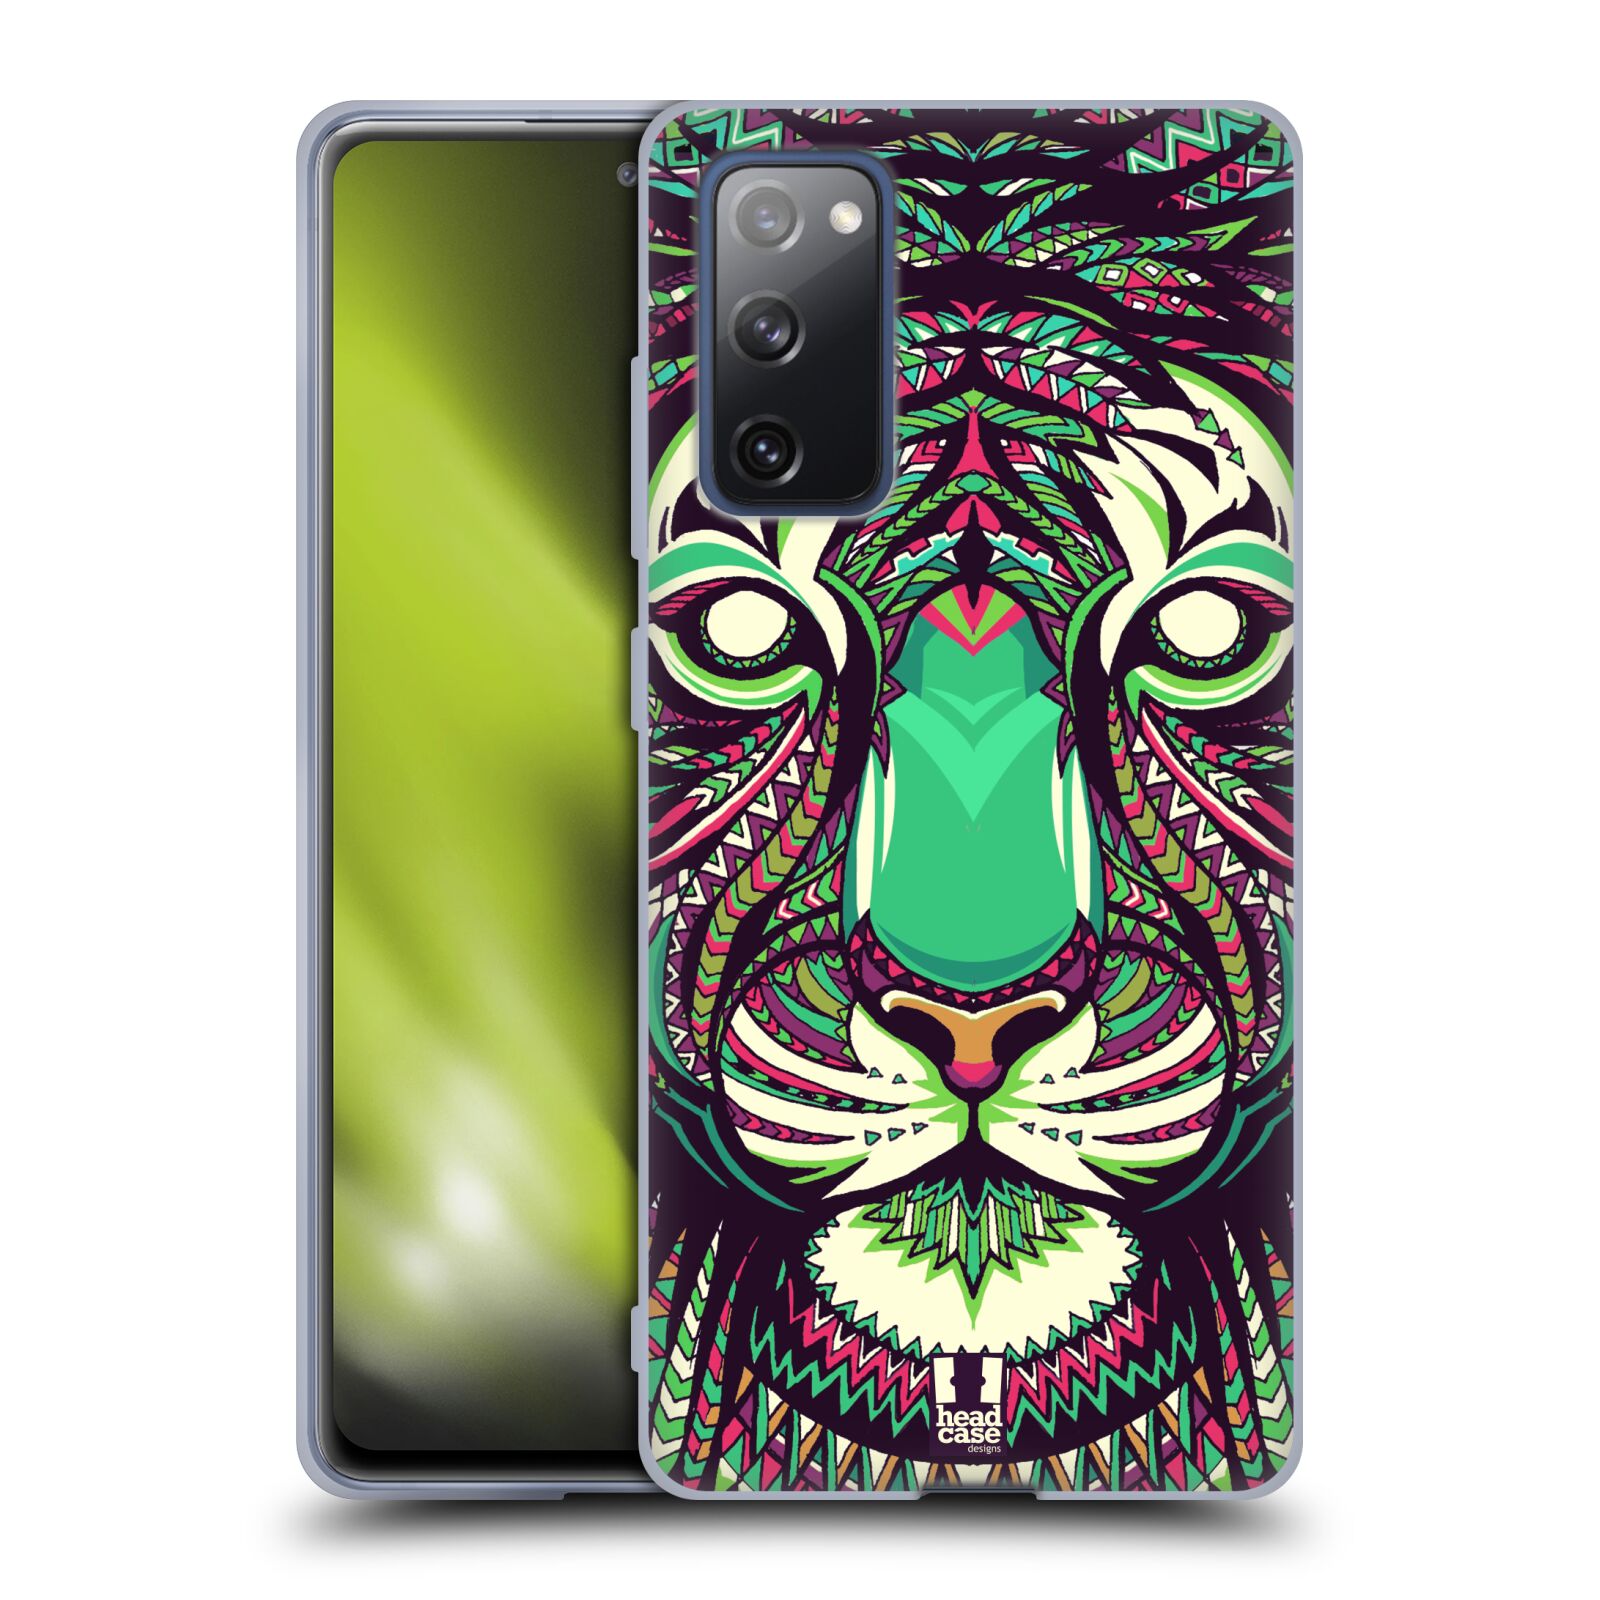 Plastový obal HEAD CASE na mobil Samsung Galaxy S20 FE / S20 FE 5G vzor Aztécký motiv zvíře 2 tygr